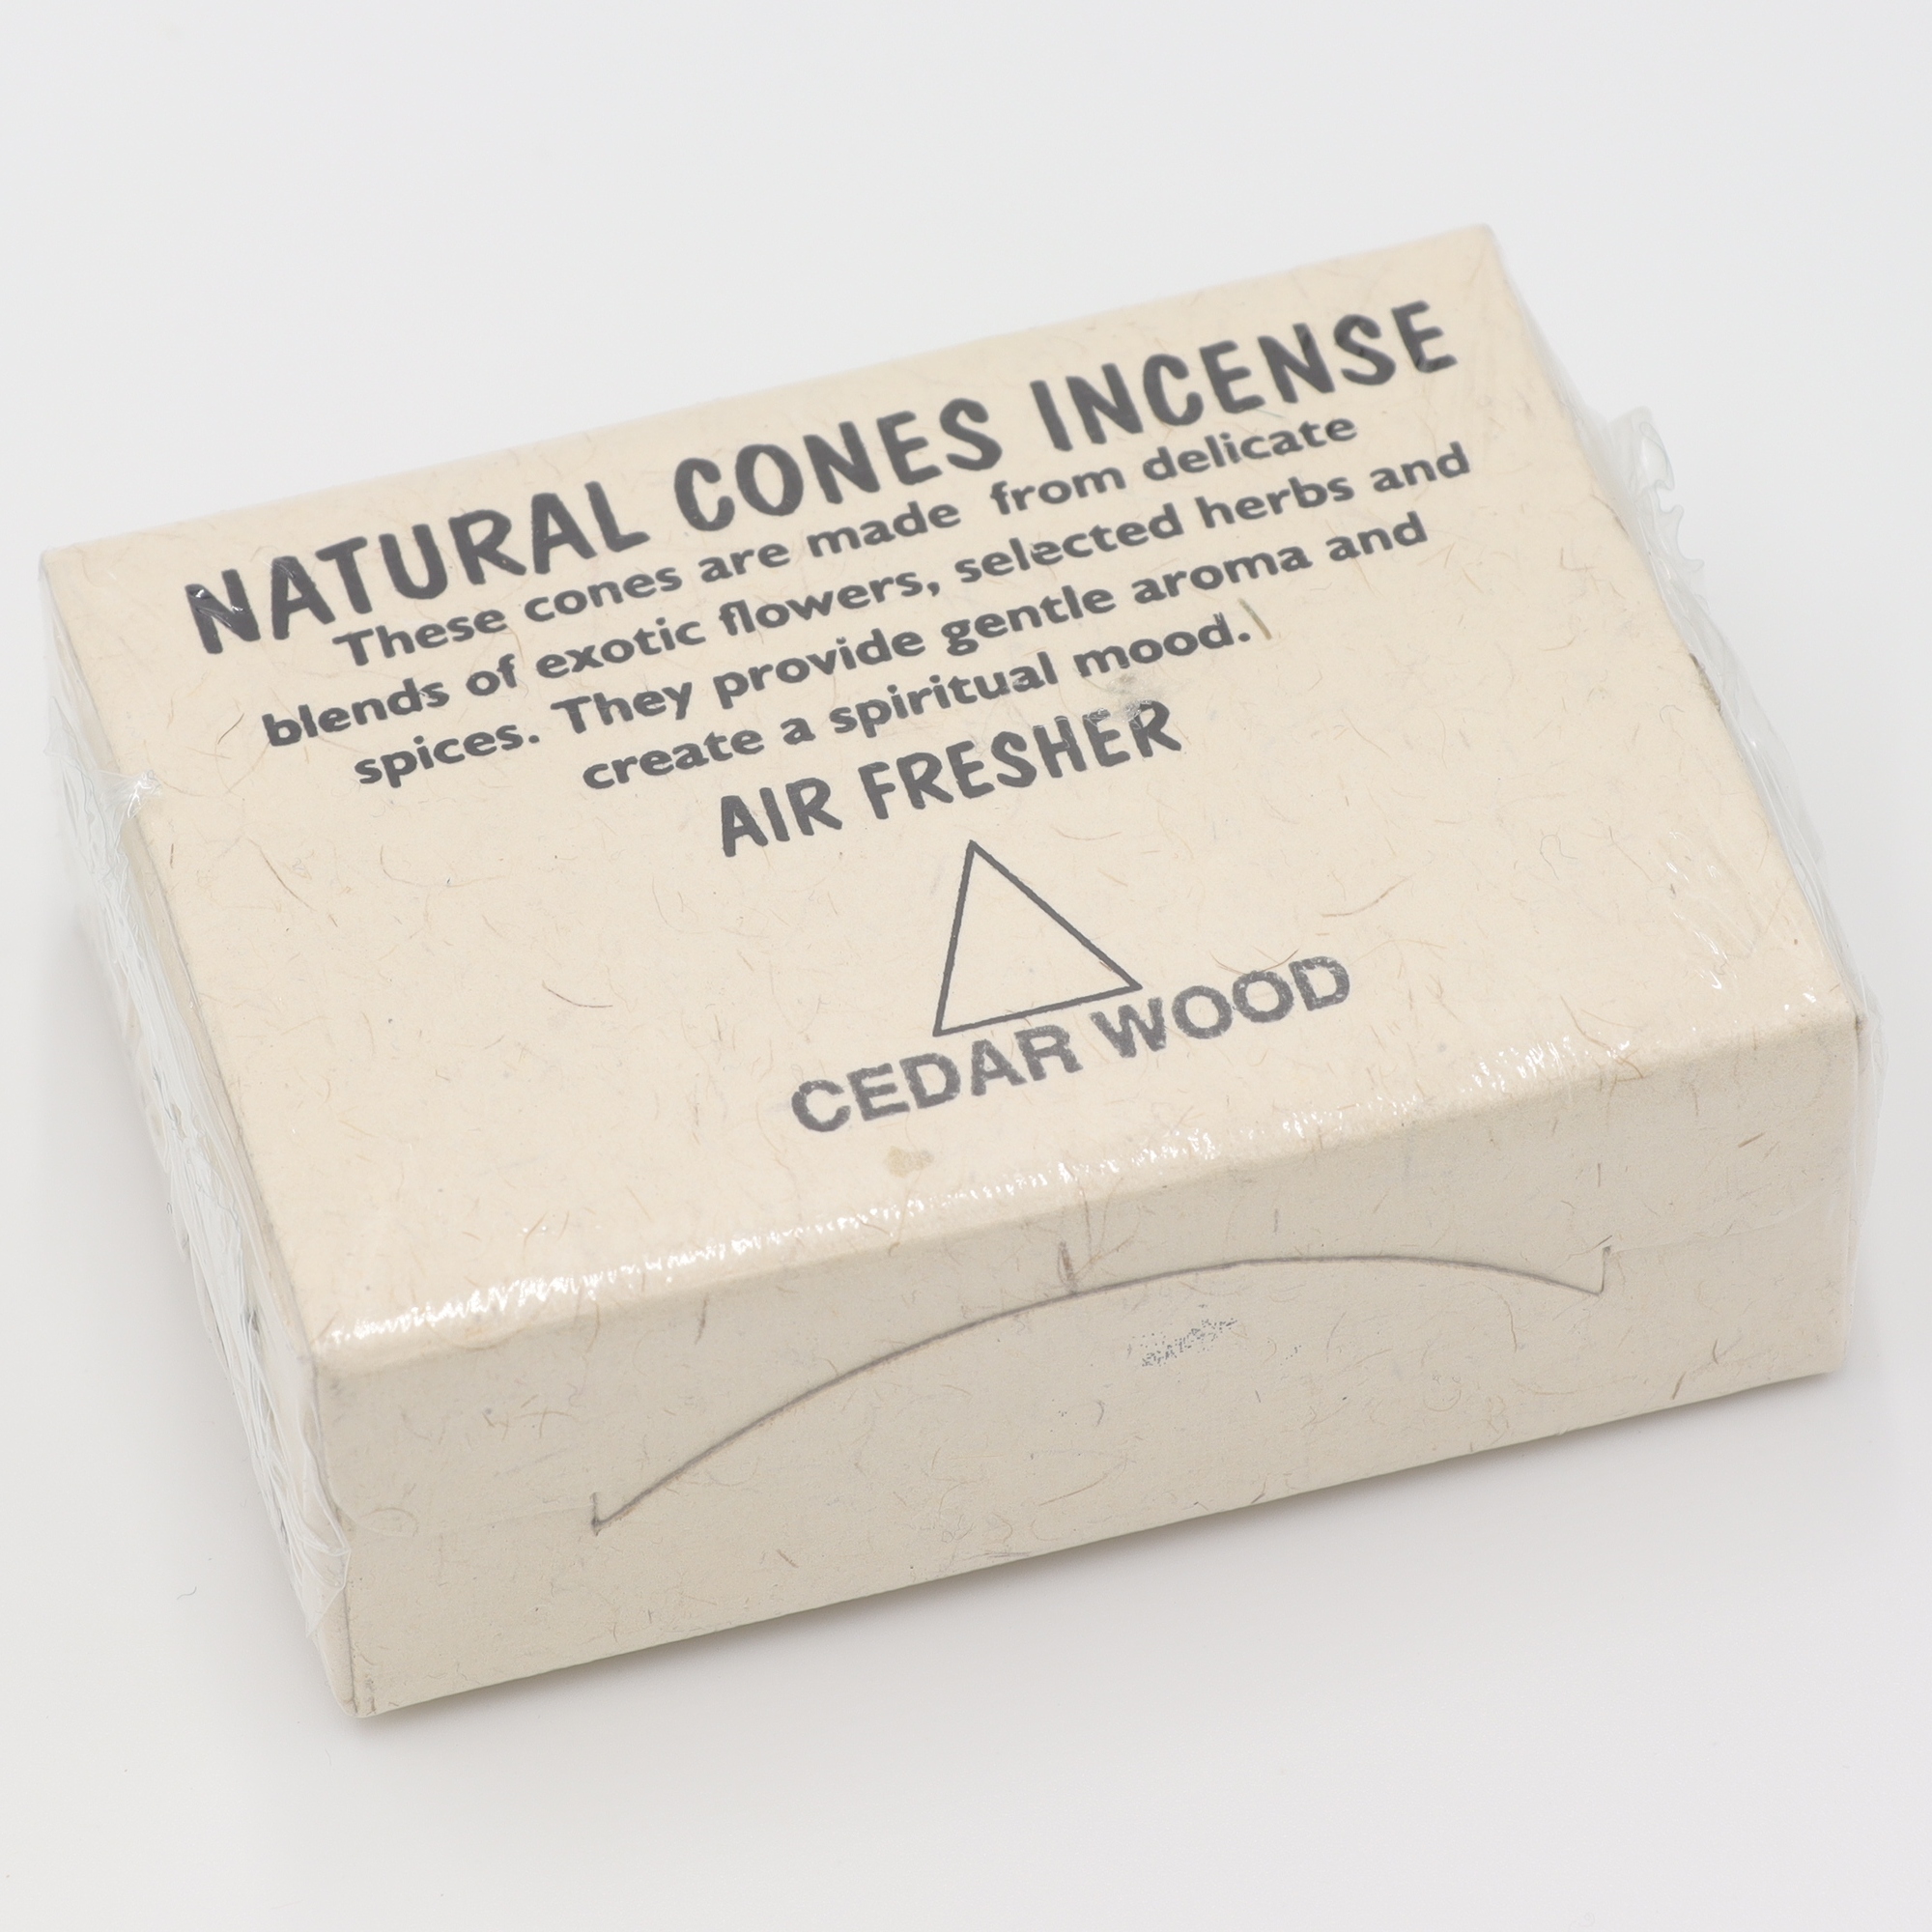 Natural Cones Incense - Cedarwood - Räucherkegel aus Nepal, handgemachte Kegel aus rein natürlichen Zutaten